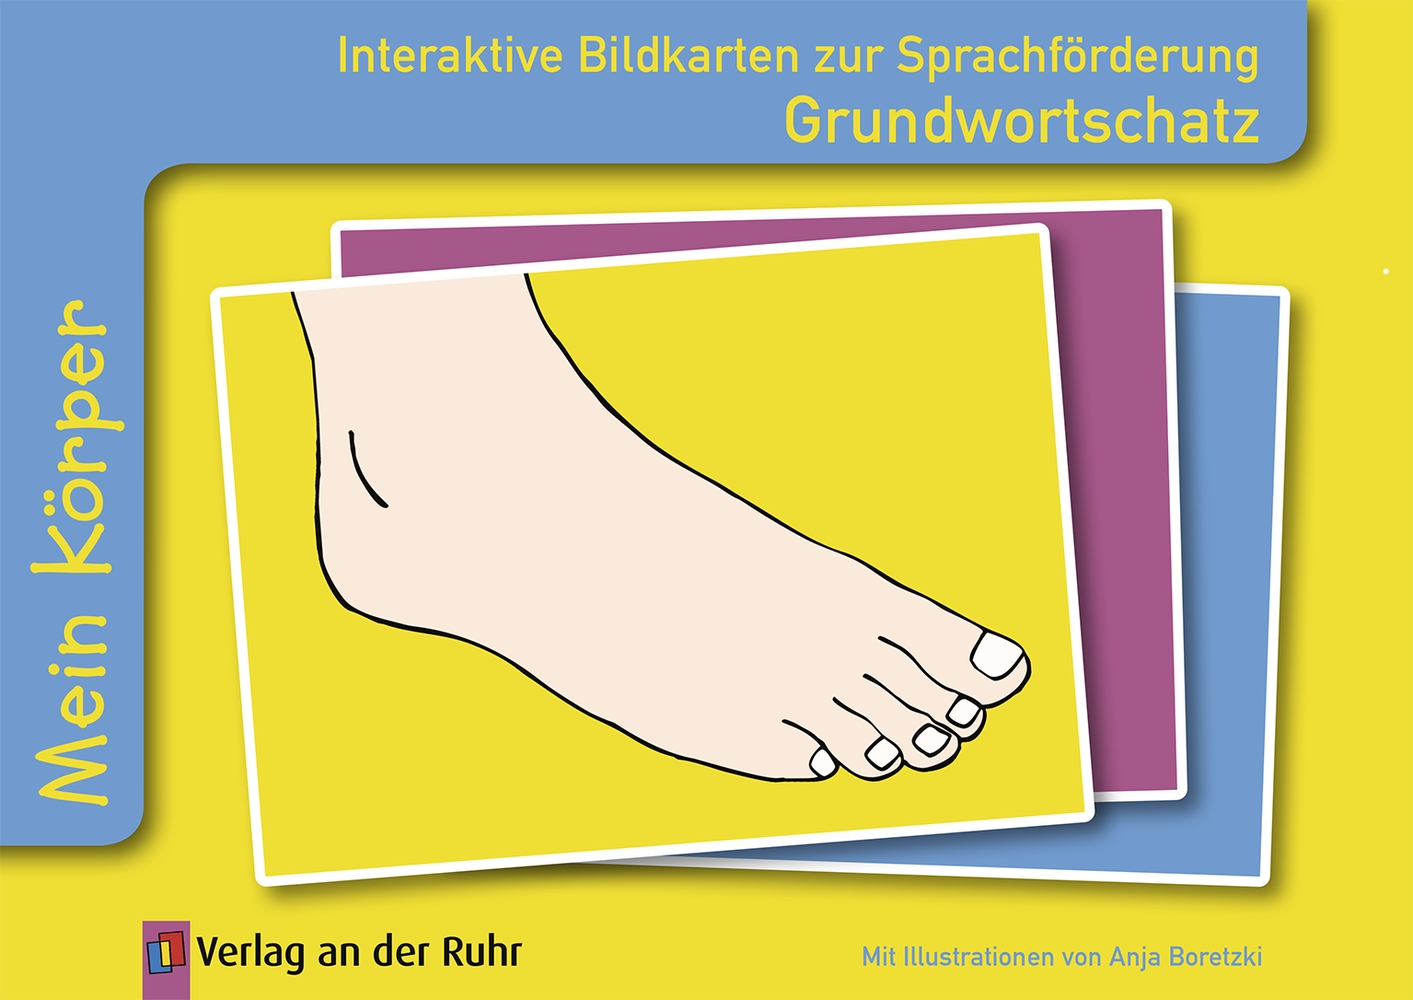 Interaktive Bildkarten zur Sprachförderung Grundwortschatz – Mein Körper